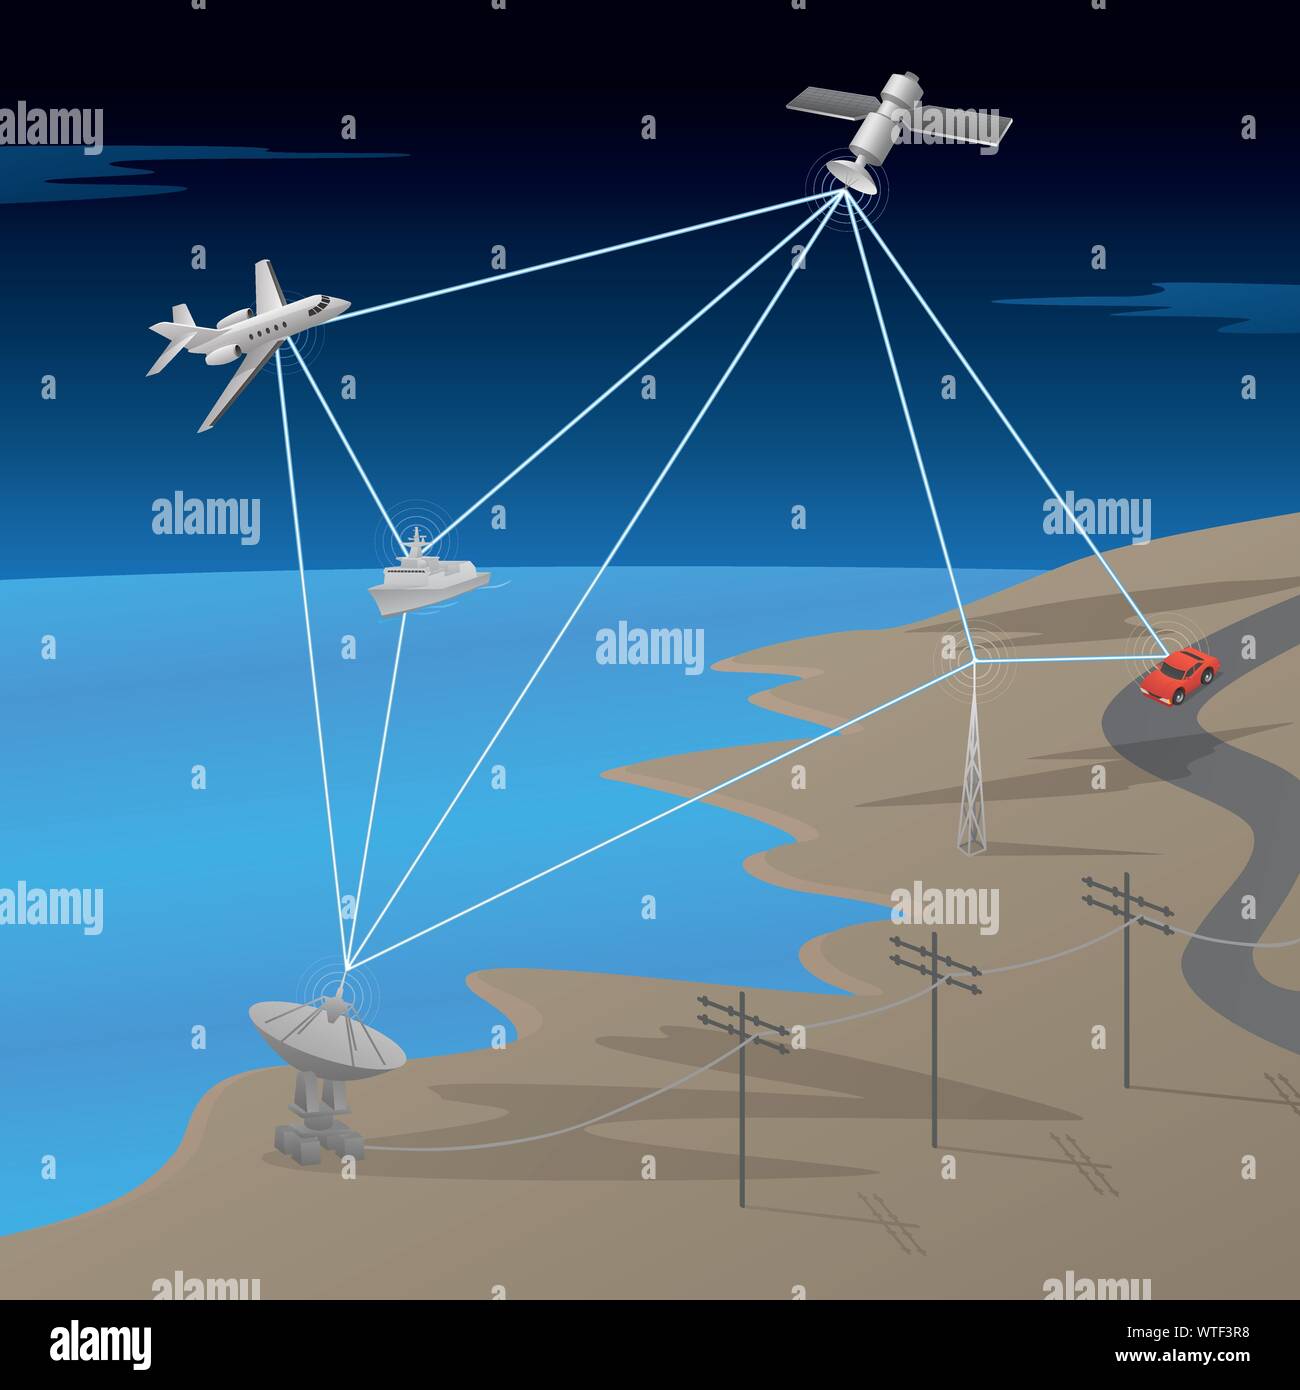 Satelliten-GPS-Netzwerk Kommunikation Szene mit Flugzeug, Schiff, AM Antenne, und Auto, Vektor, Abbildung Stock Vektor